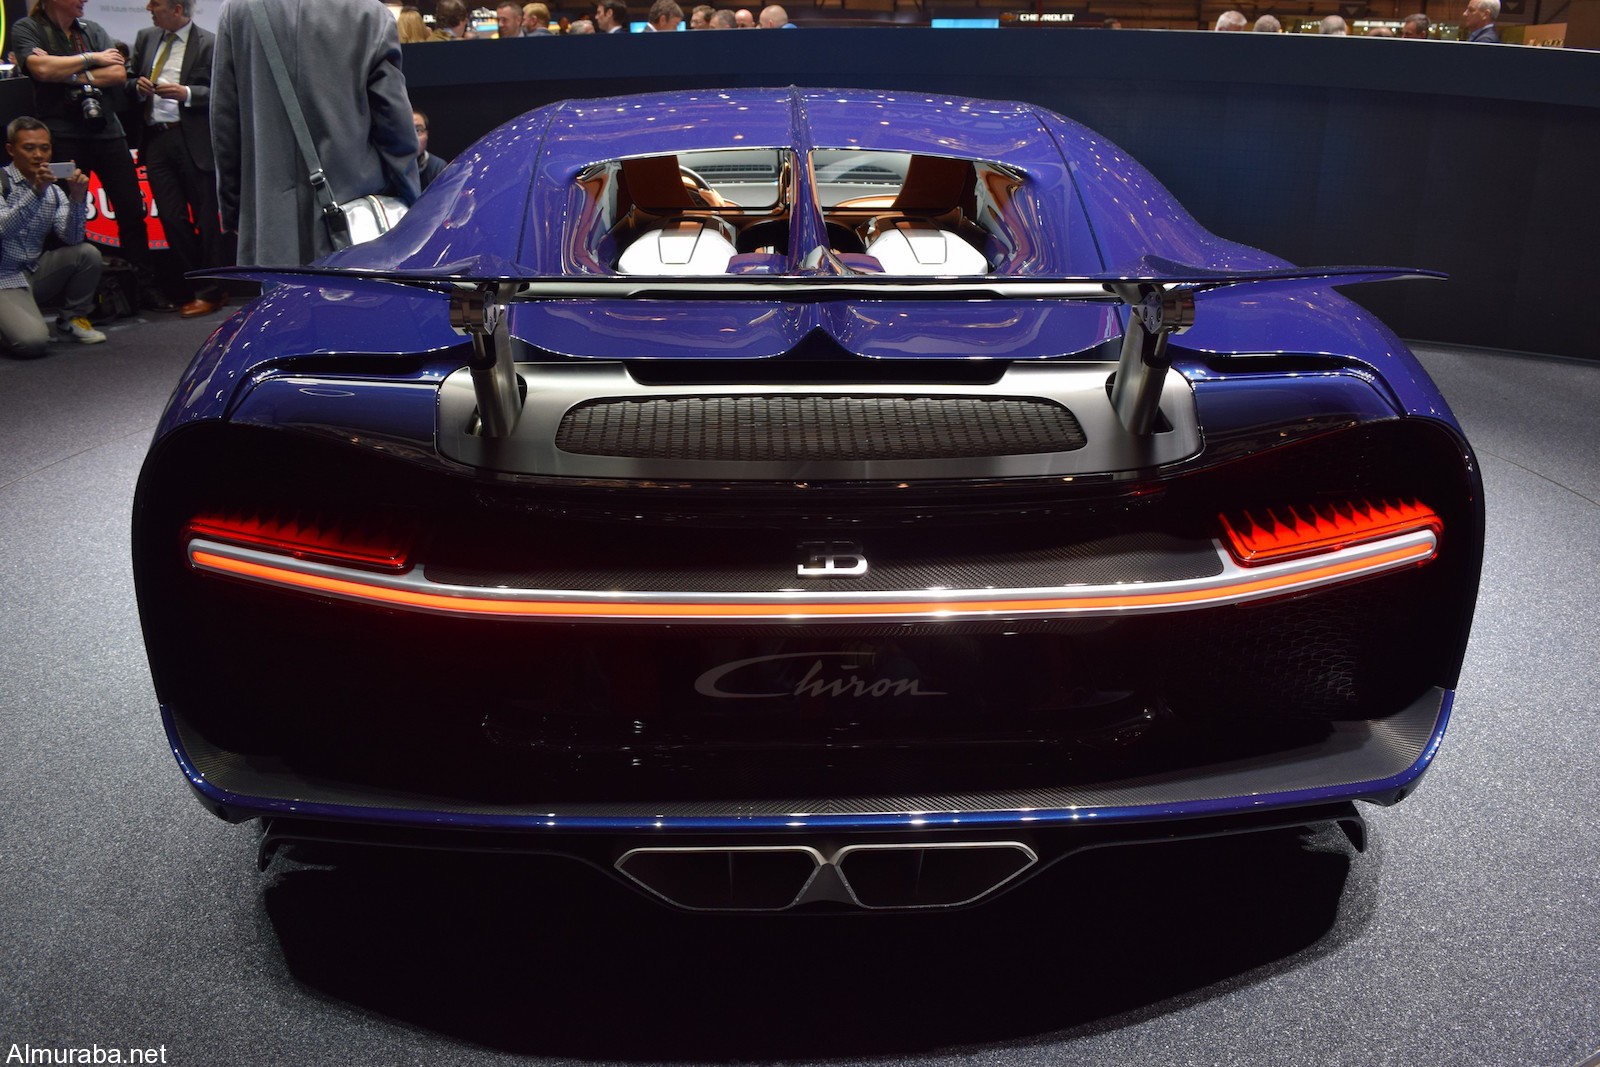 "كوينجسيج" ريجيرا أم "بوجاتي" تشيرون؛ أيّ الخارقتان ذوات محركات الـ1,500 حصان تفضلون؟ Koenigsegg Vs Bugatti 7